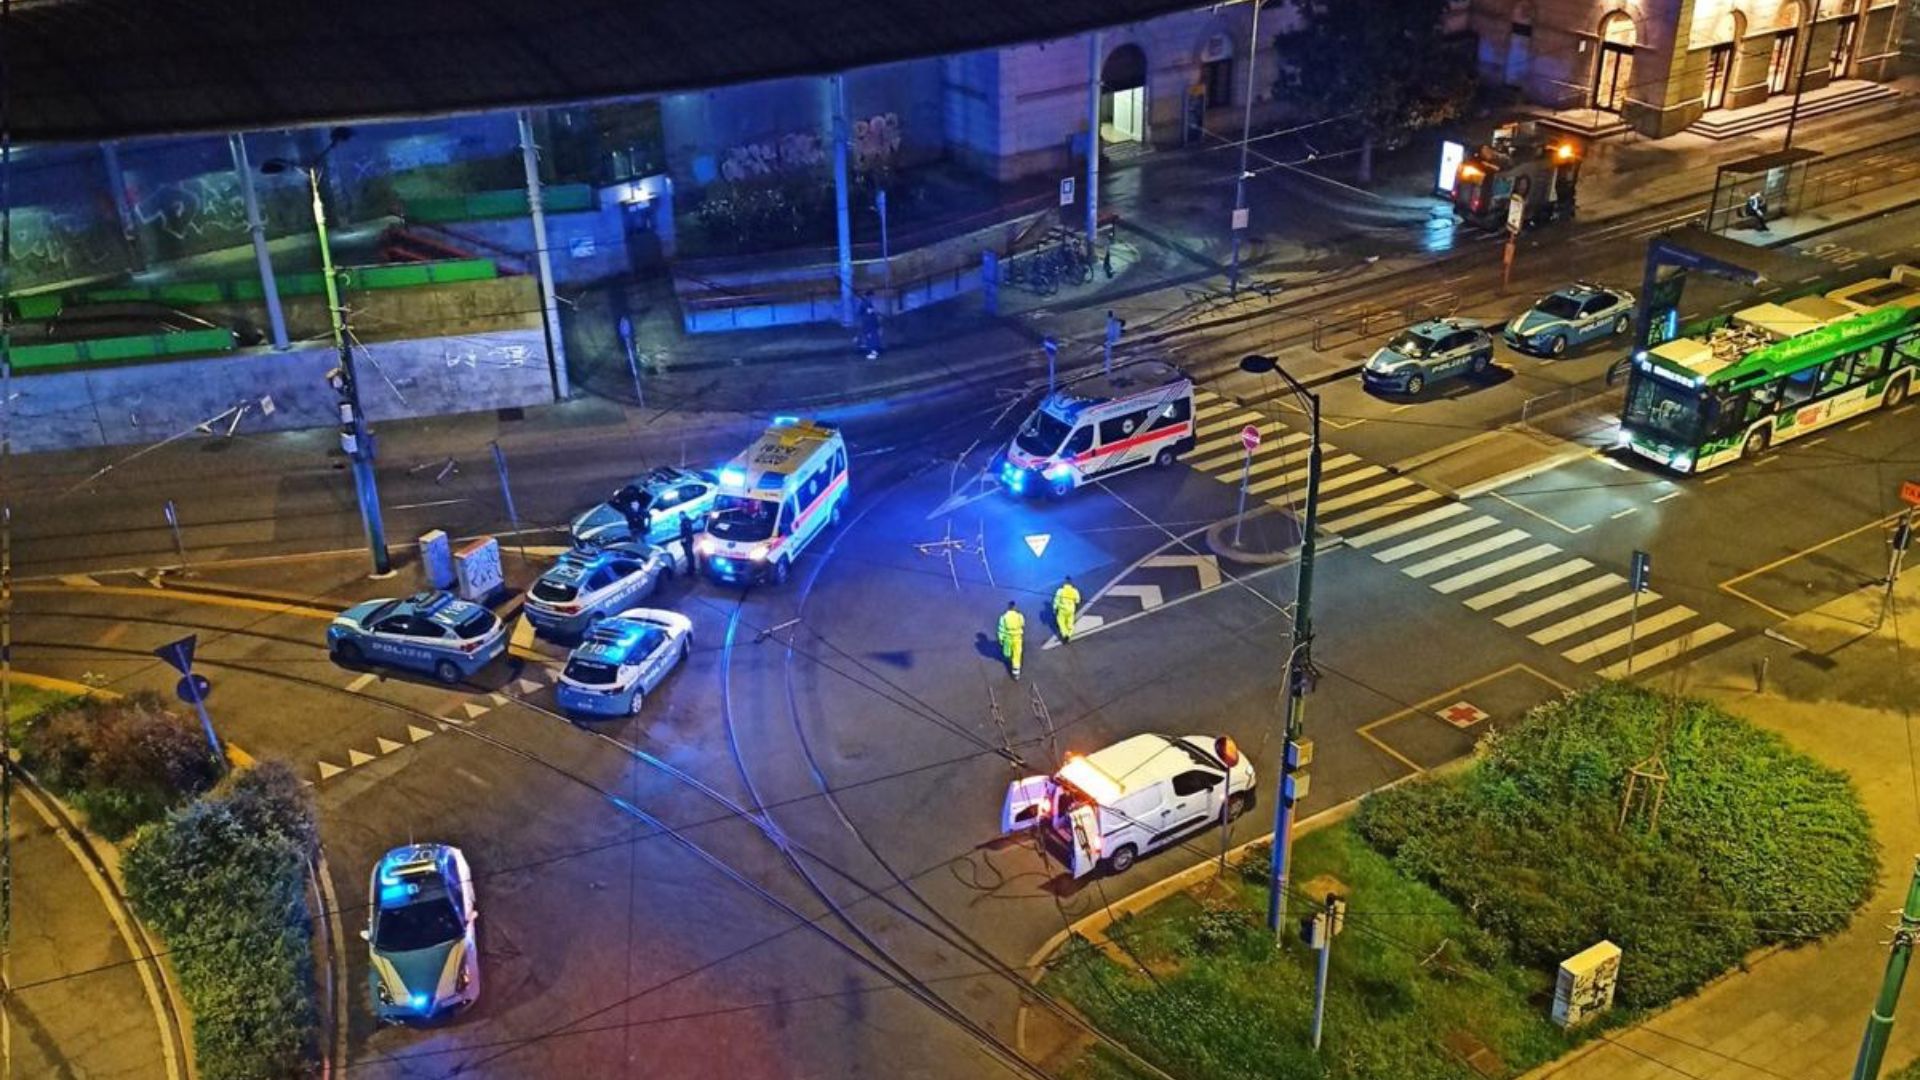 Milano, poliziotto accoltellato alla schiena: in manette 37enne marocchino